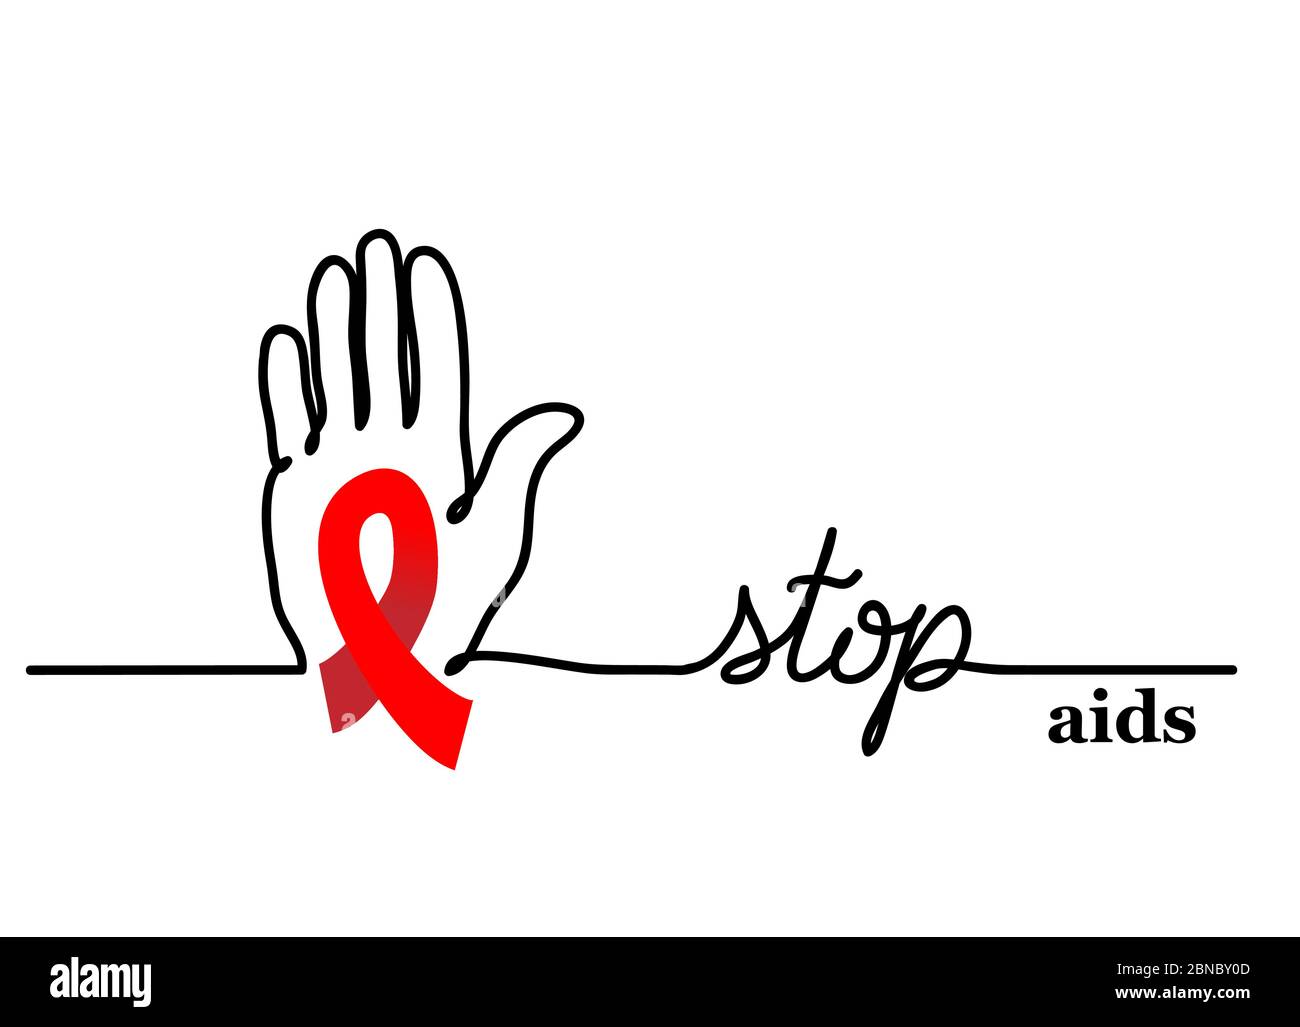 Anschlaghilfen. Vektor-Hintergrund mit Hand und rotem Band, Schleife. Stop Aids Lettering, eine kontinuierliche Linie Zeichnung Web Banner Stock Vektor